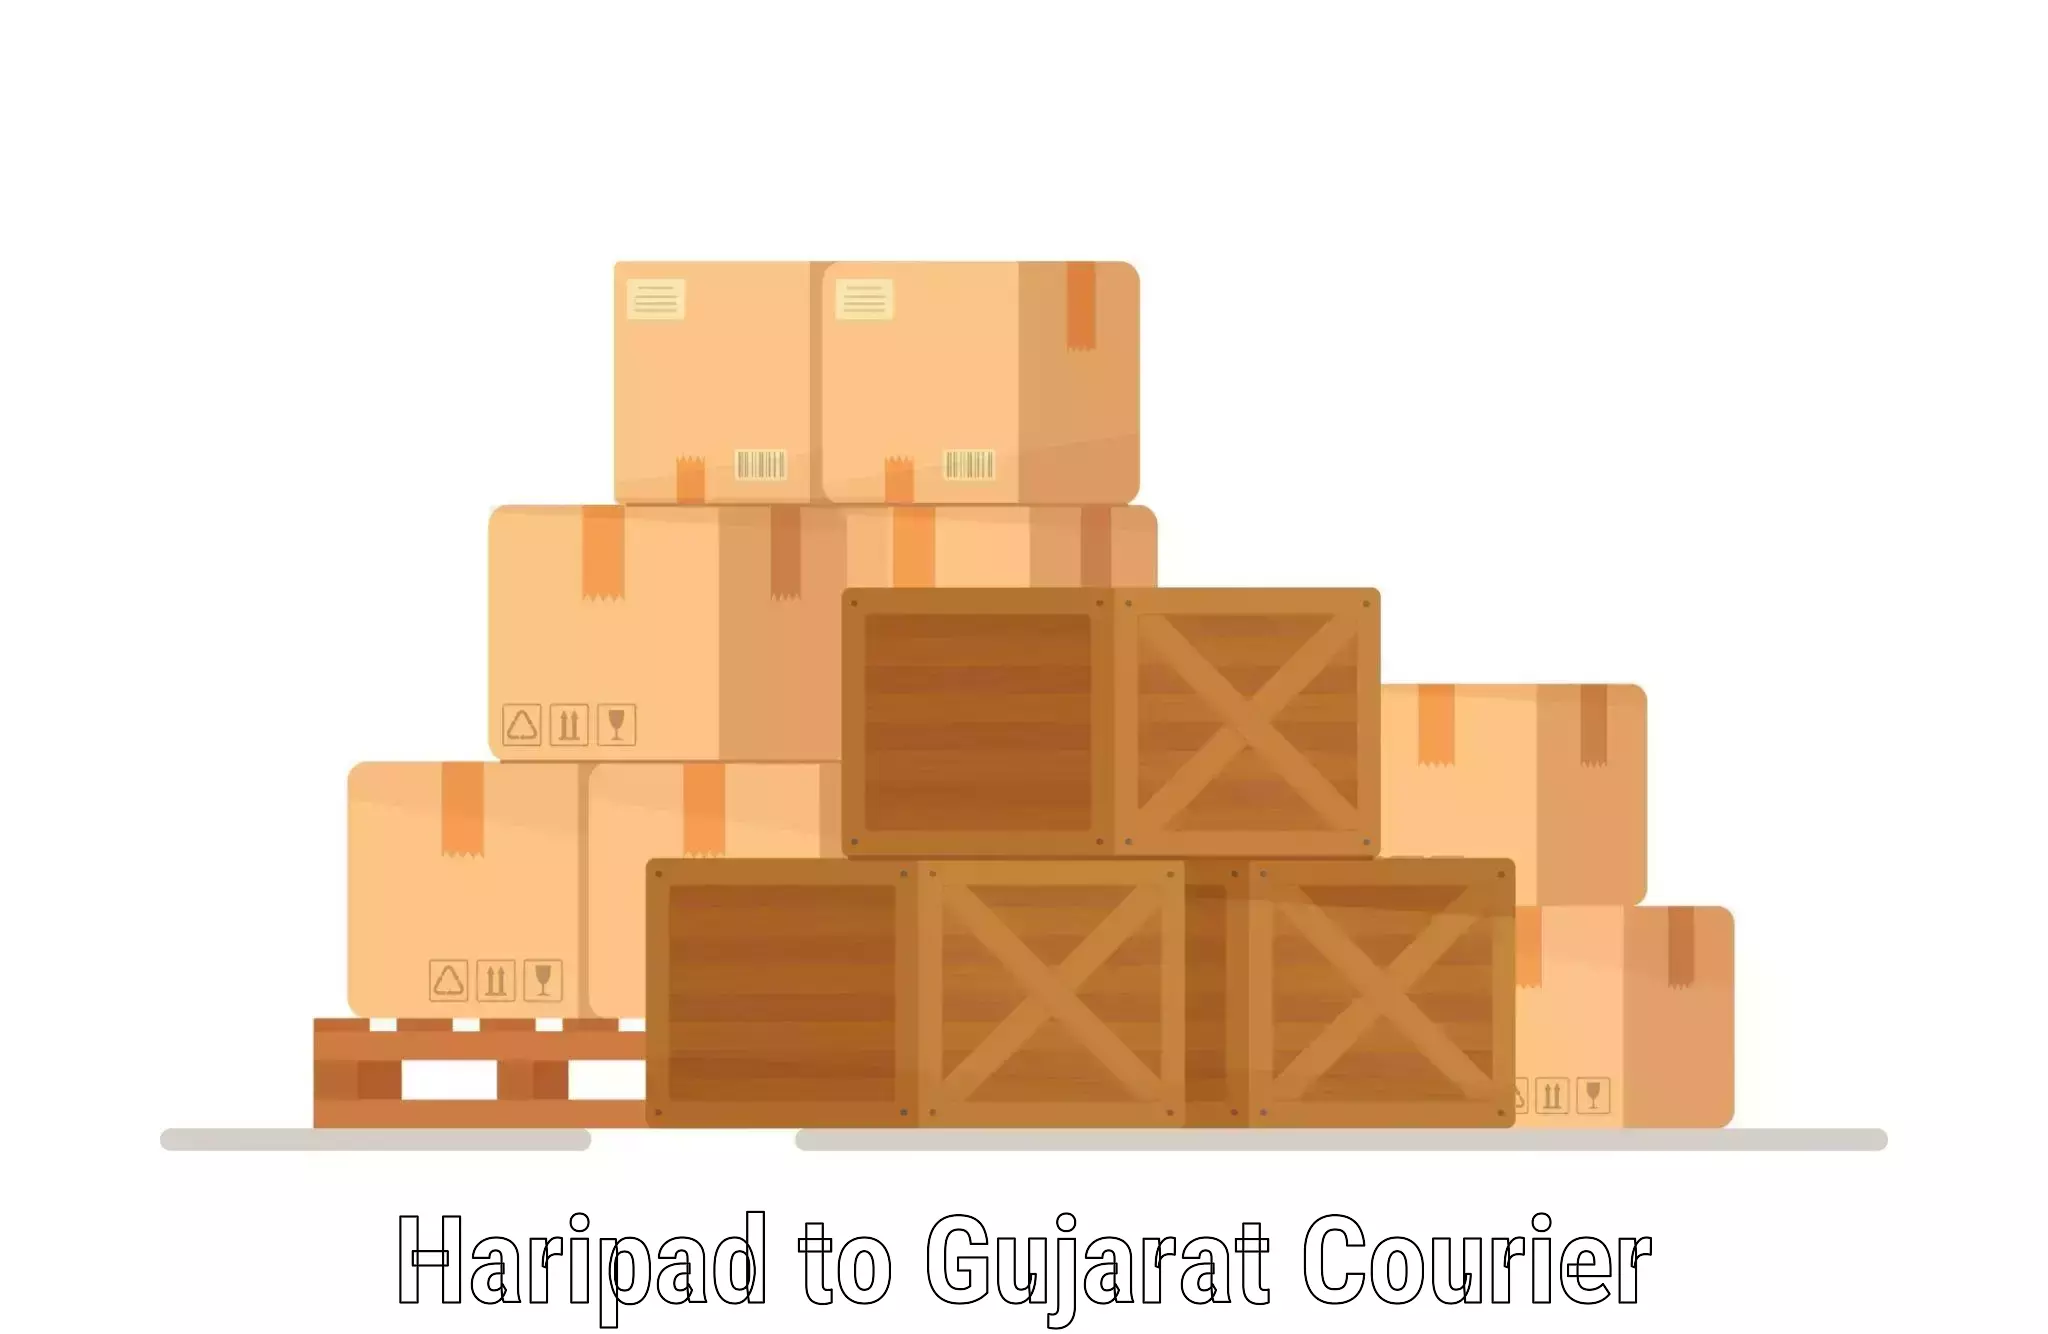 Logistics efficiency Haripad to Rajula